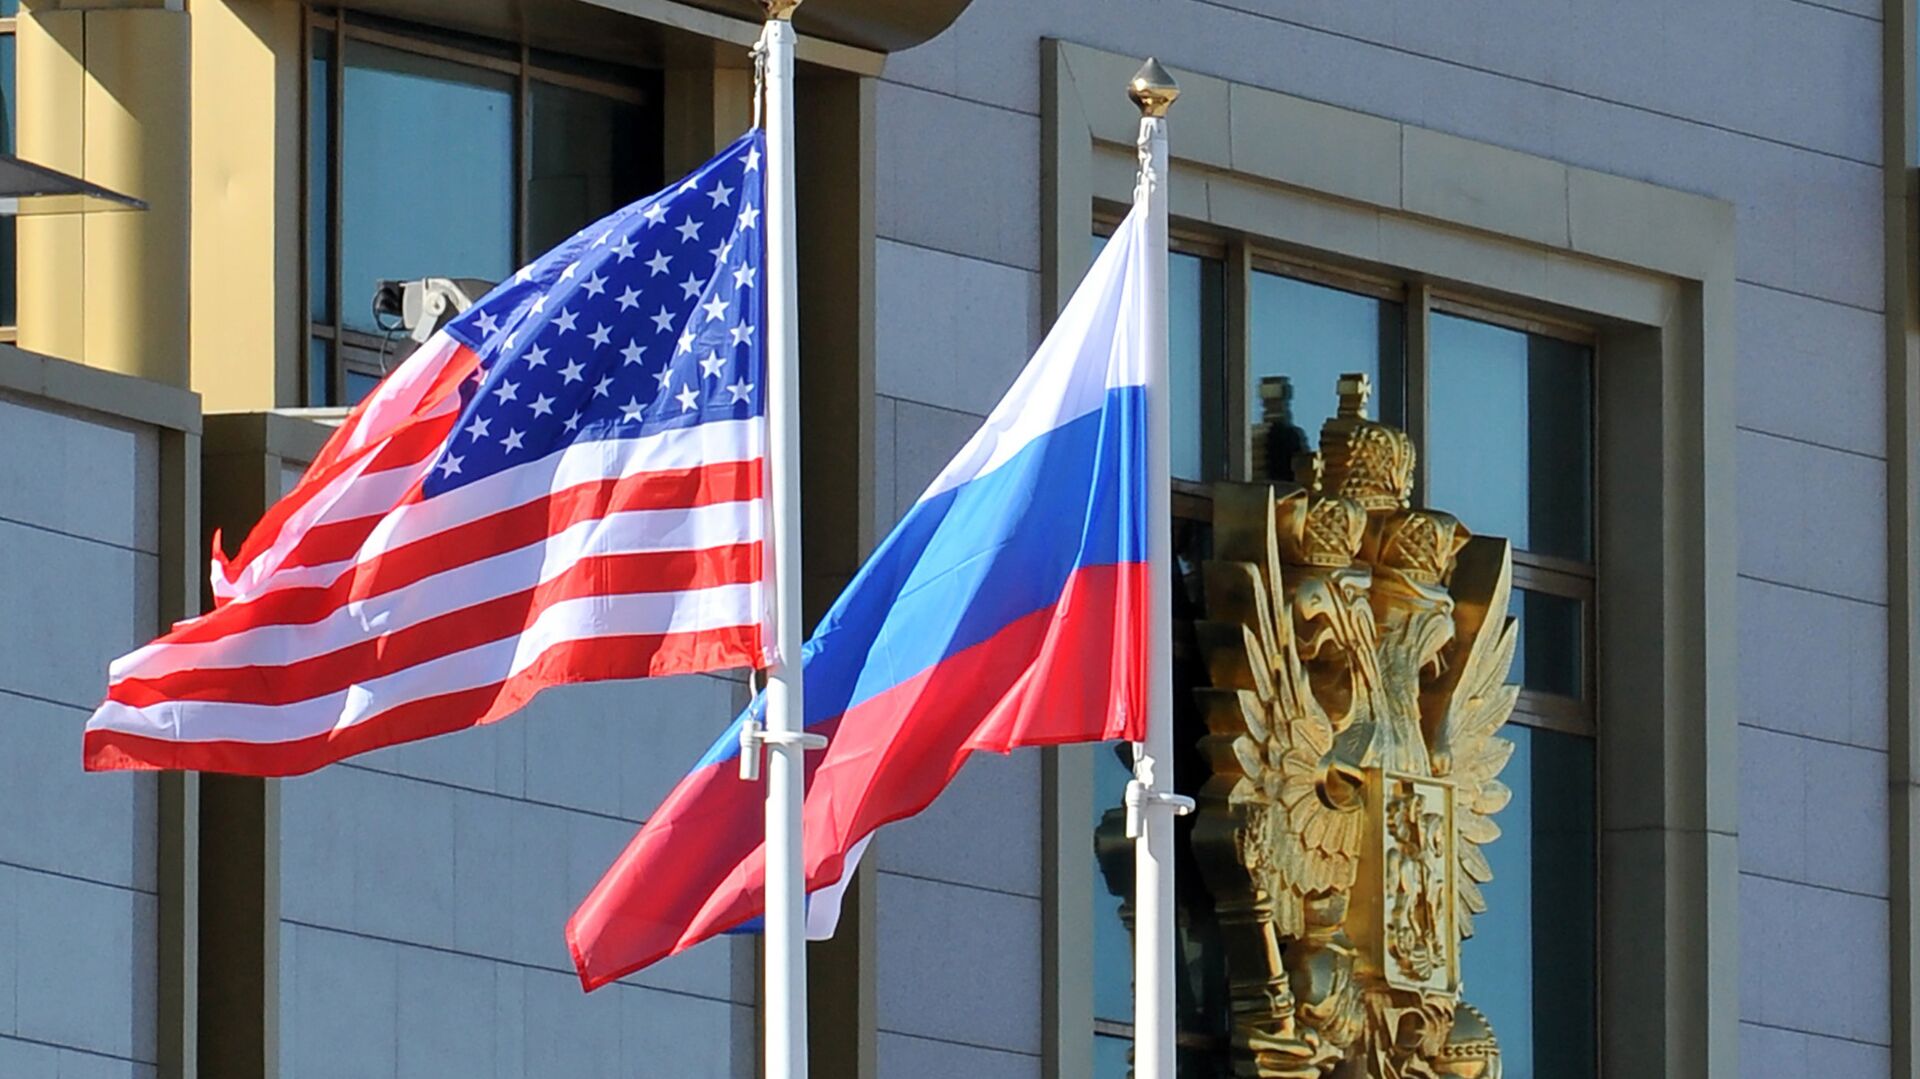 Banderas de EEUU y Rusia - Sputnik Mundo, 1920, 03.03.2021